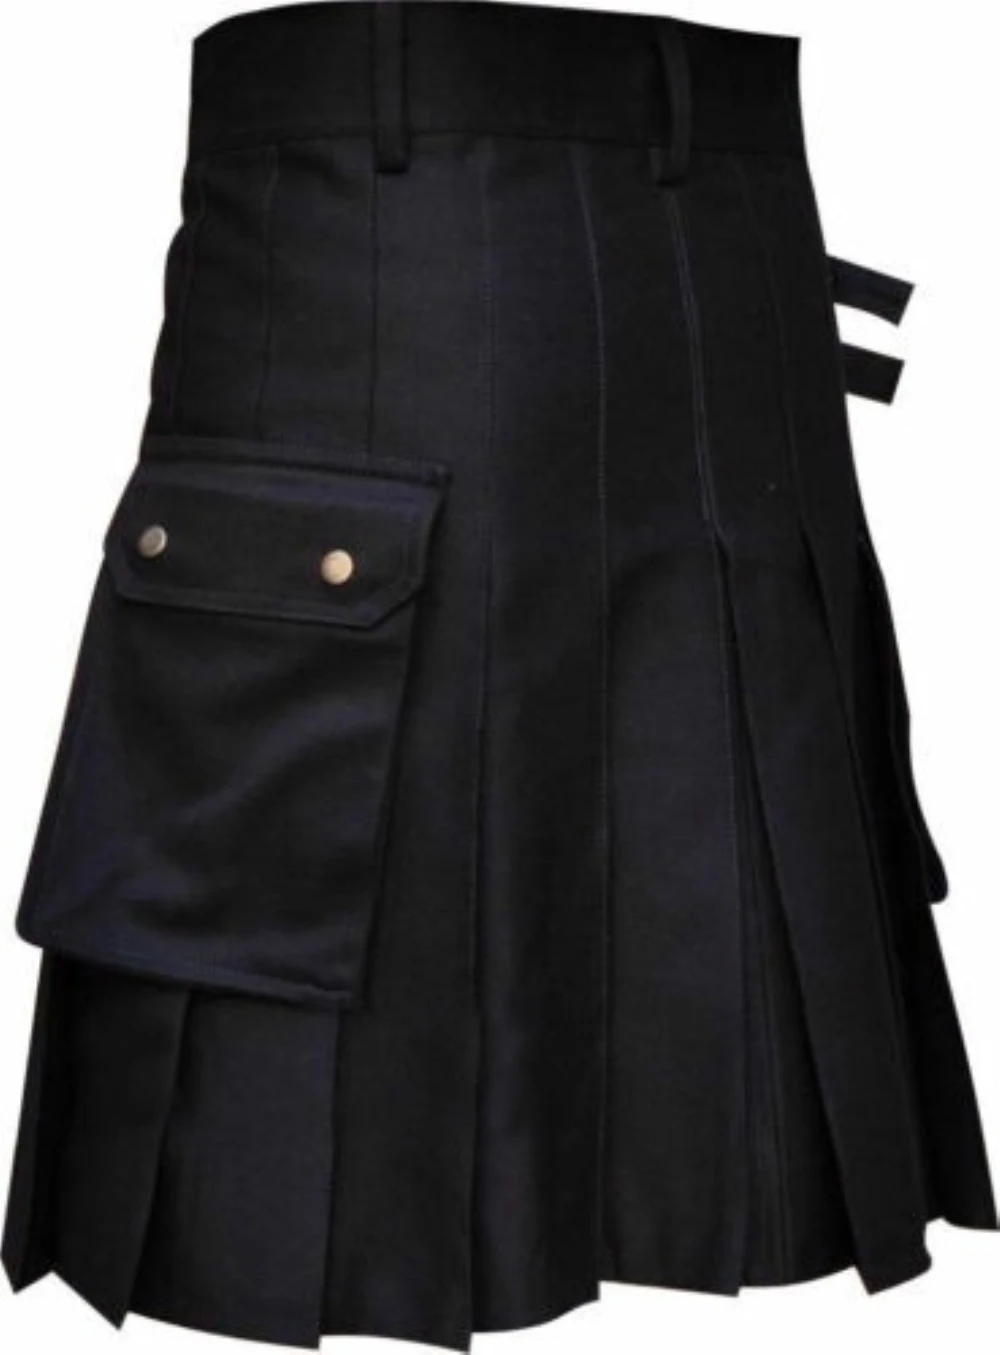 Vysoký kvalita móda muži hustý kapsa kilts celistvý barva gotický kilt vintage bojovnice dovozné kilt kov pás plisované sukně